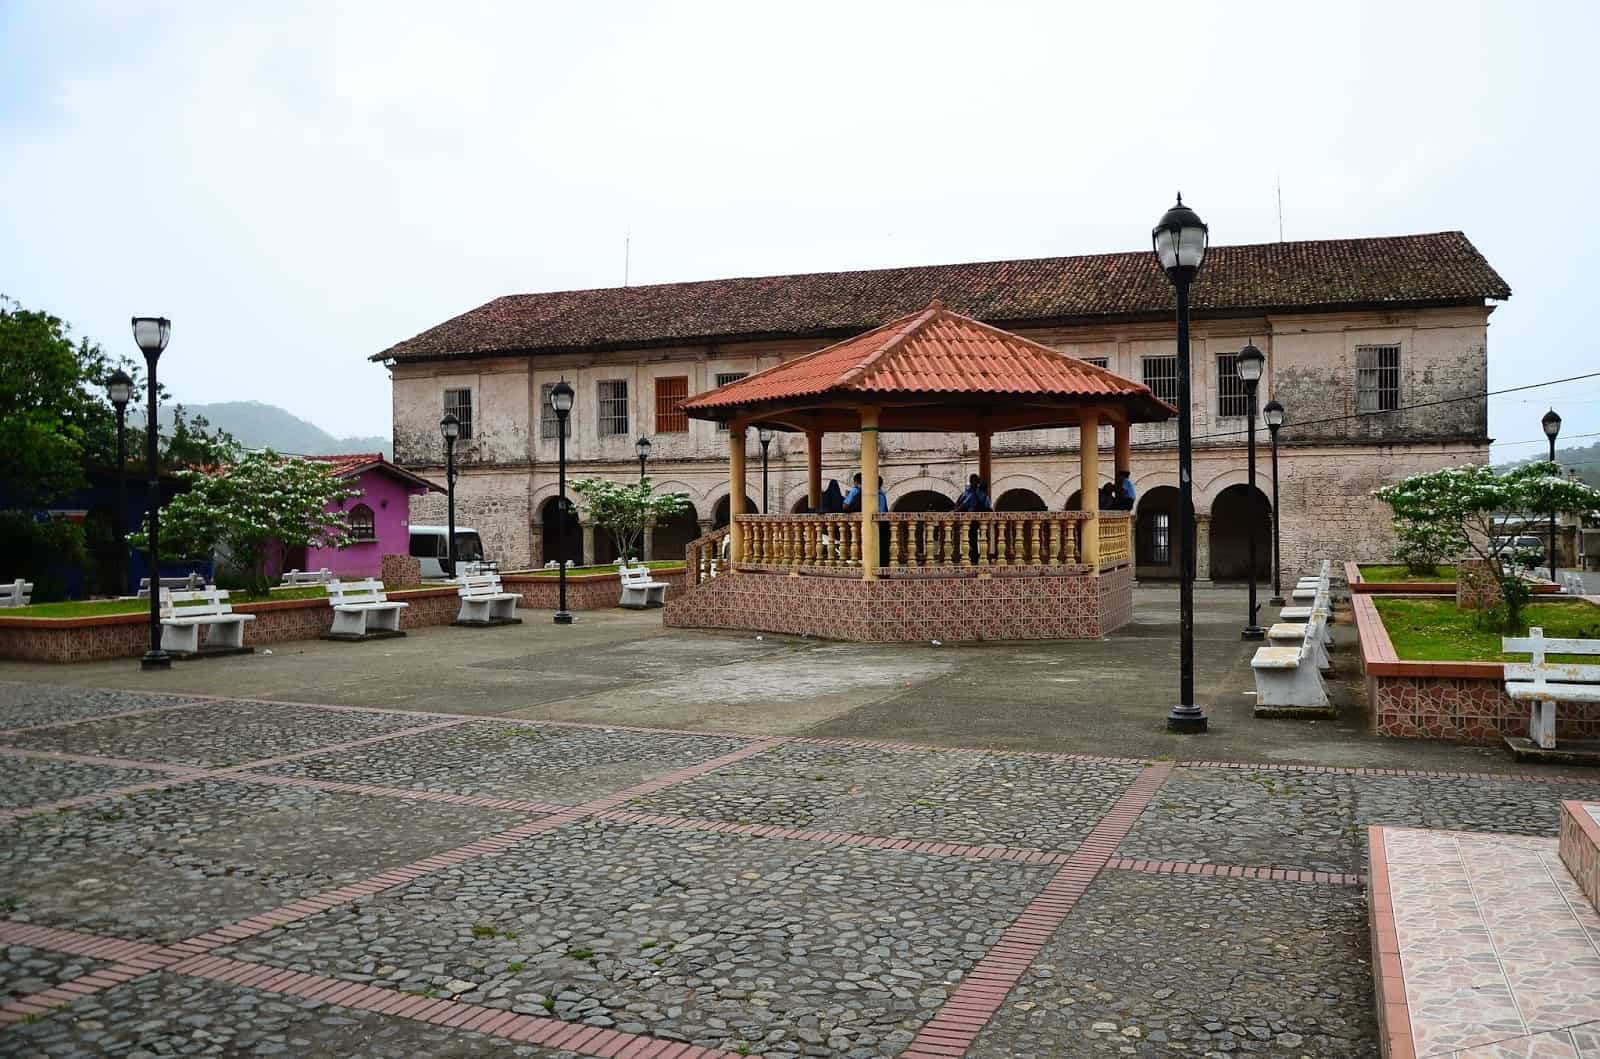 Plaza in Portobelo, Panama